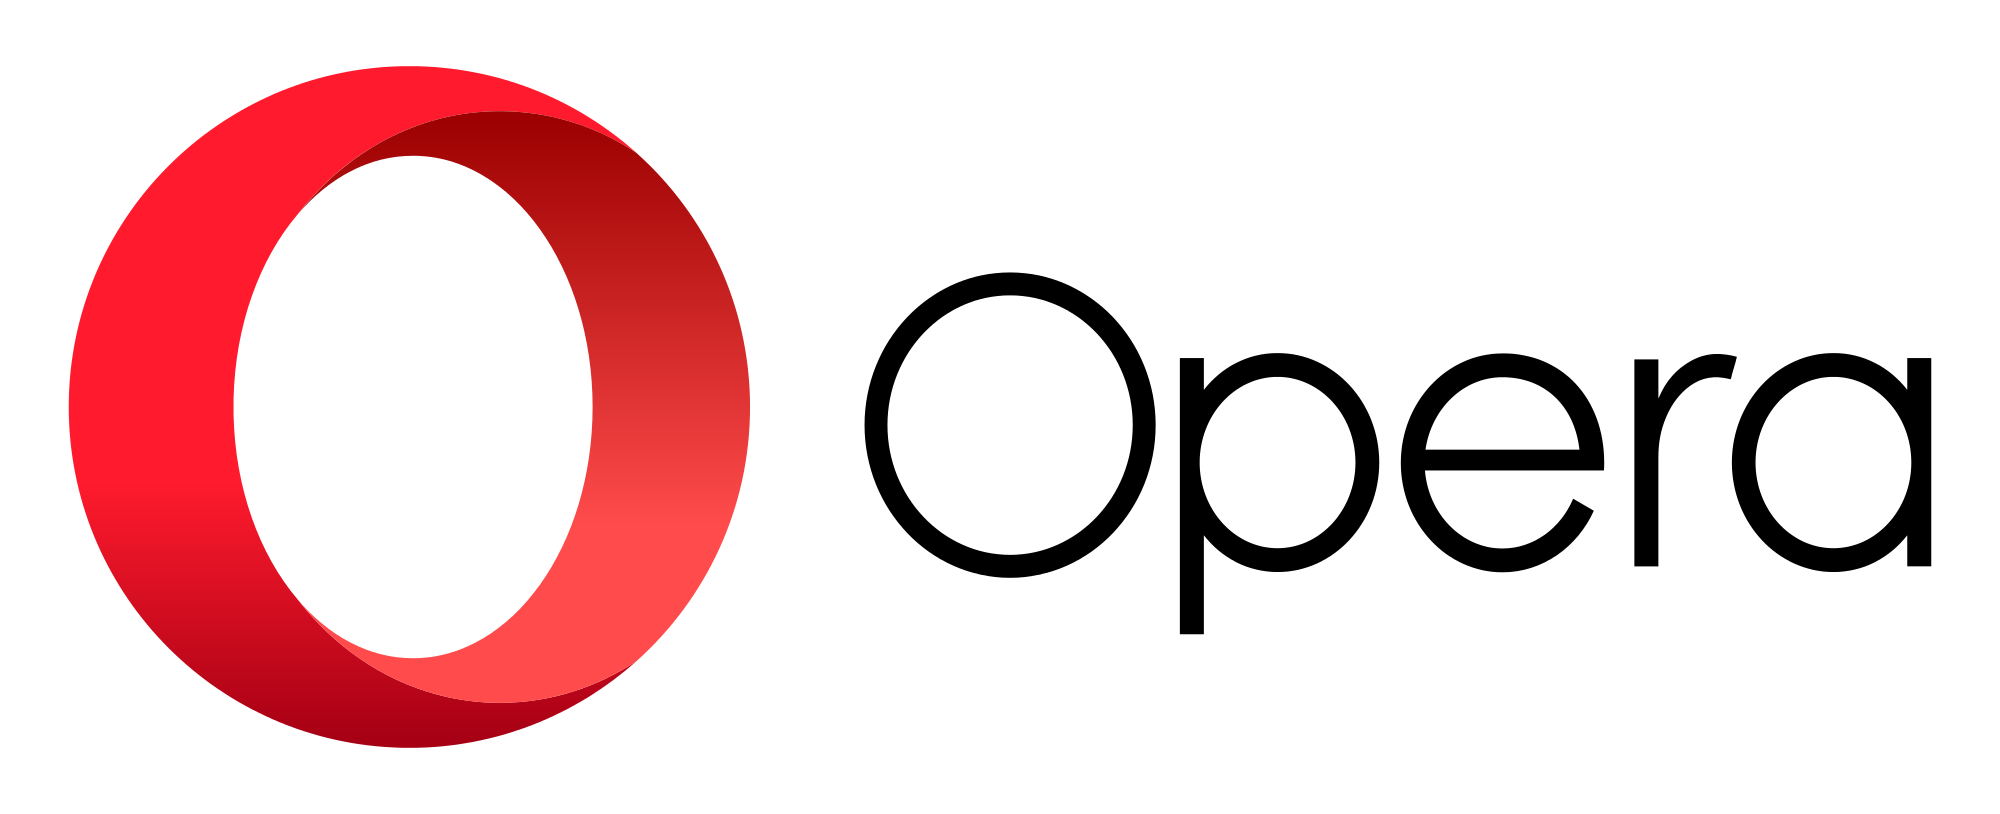 Opera Logo PNG - 36685